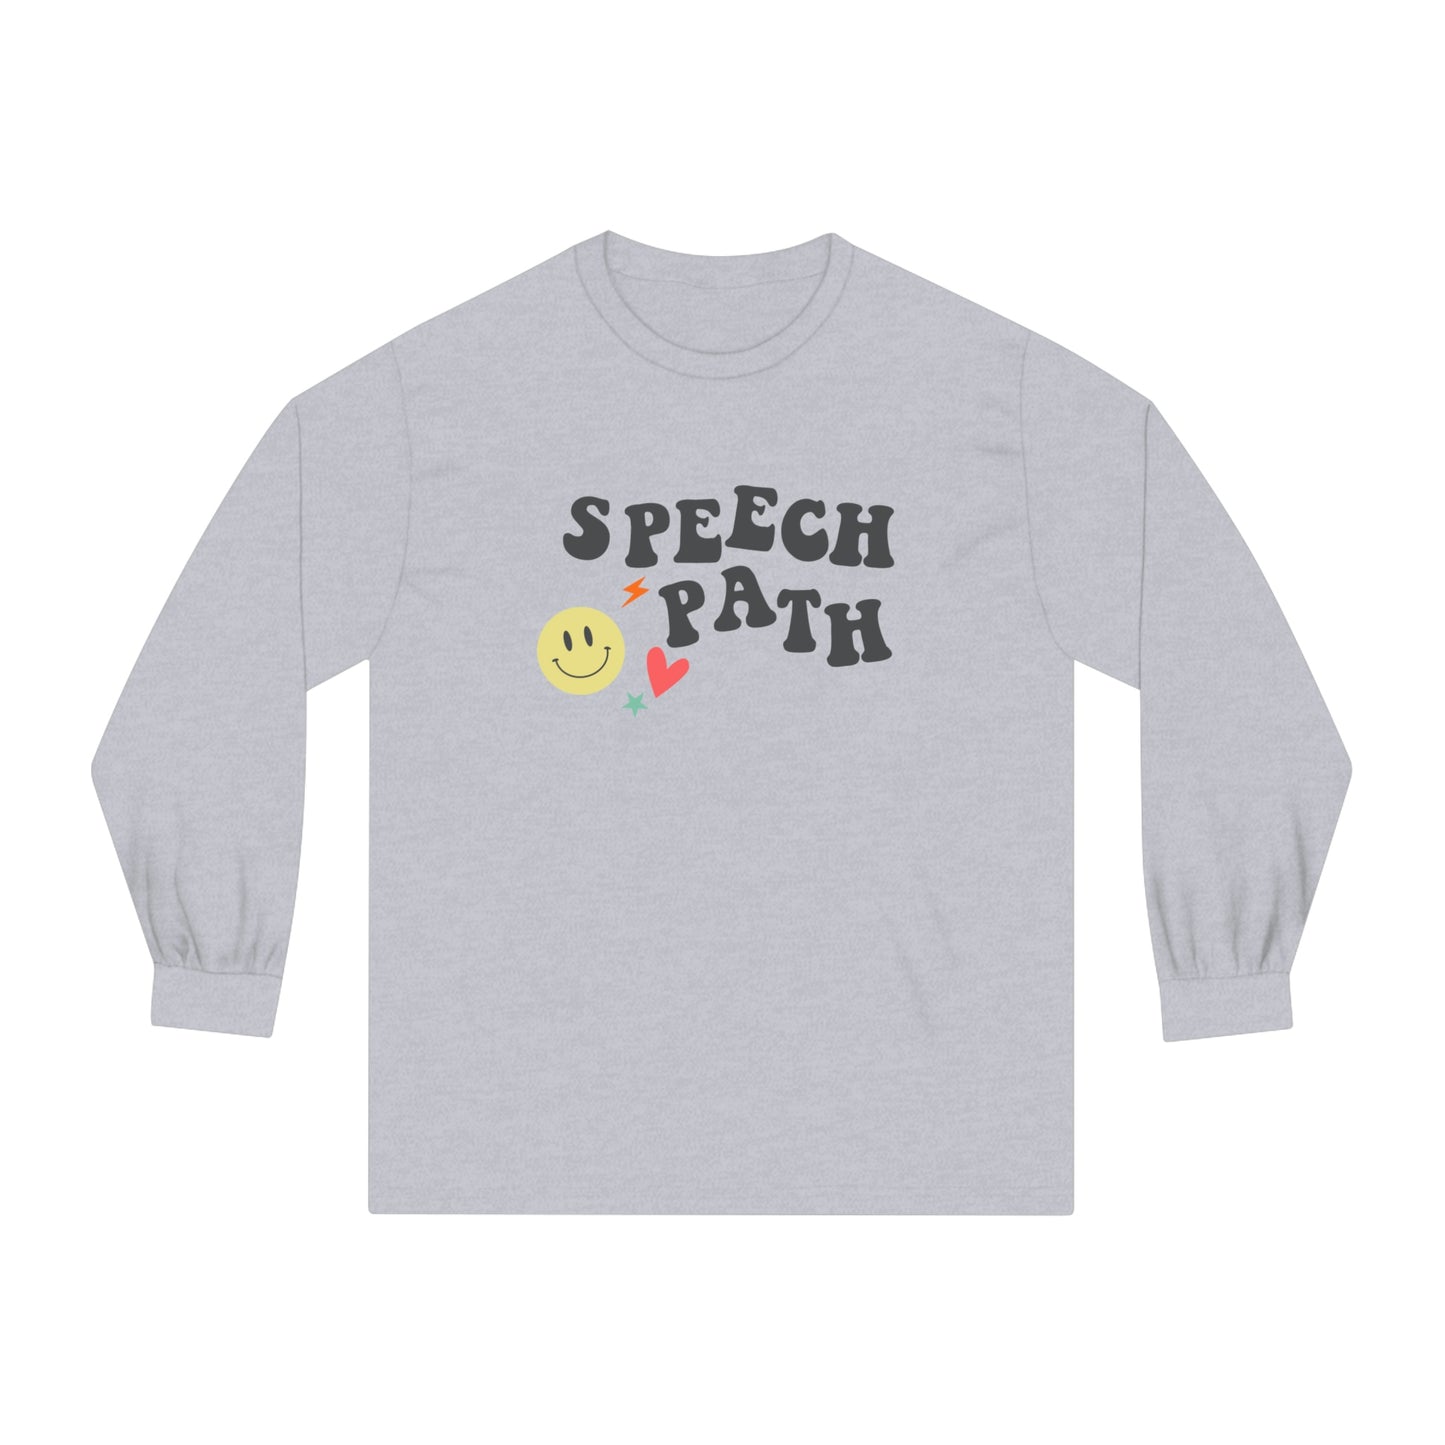 Speech Path Long Sleeve T-Shirt